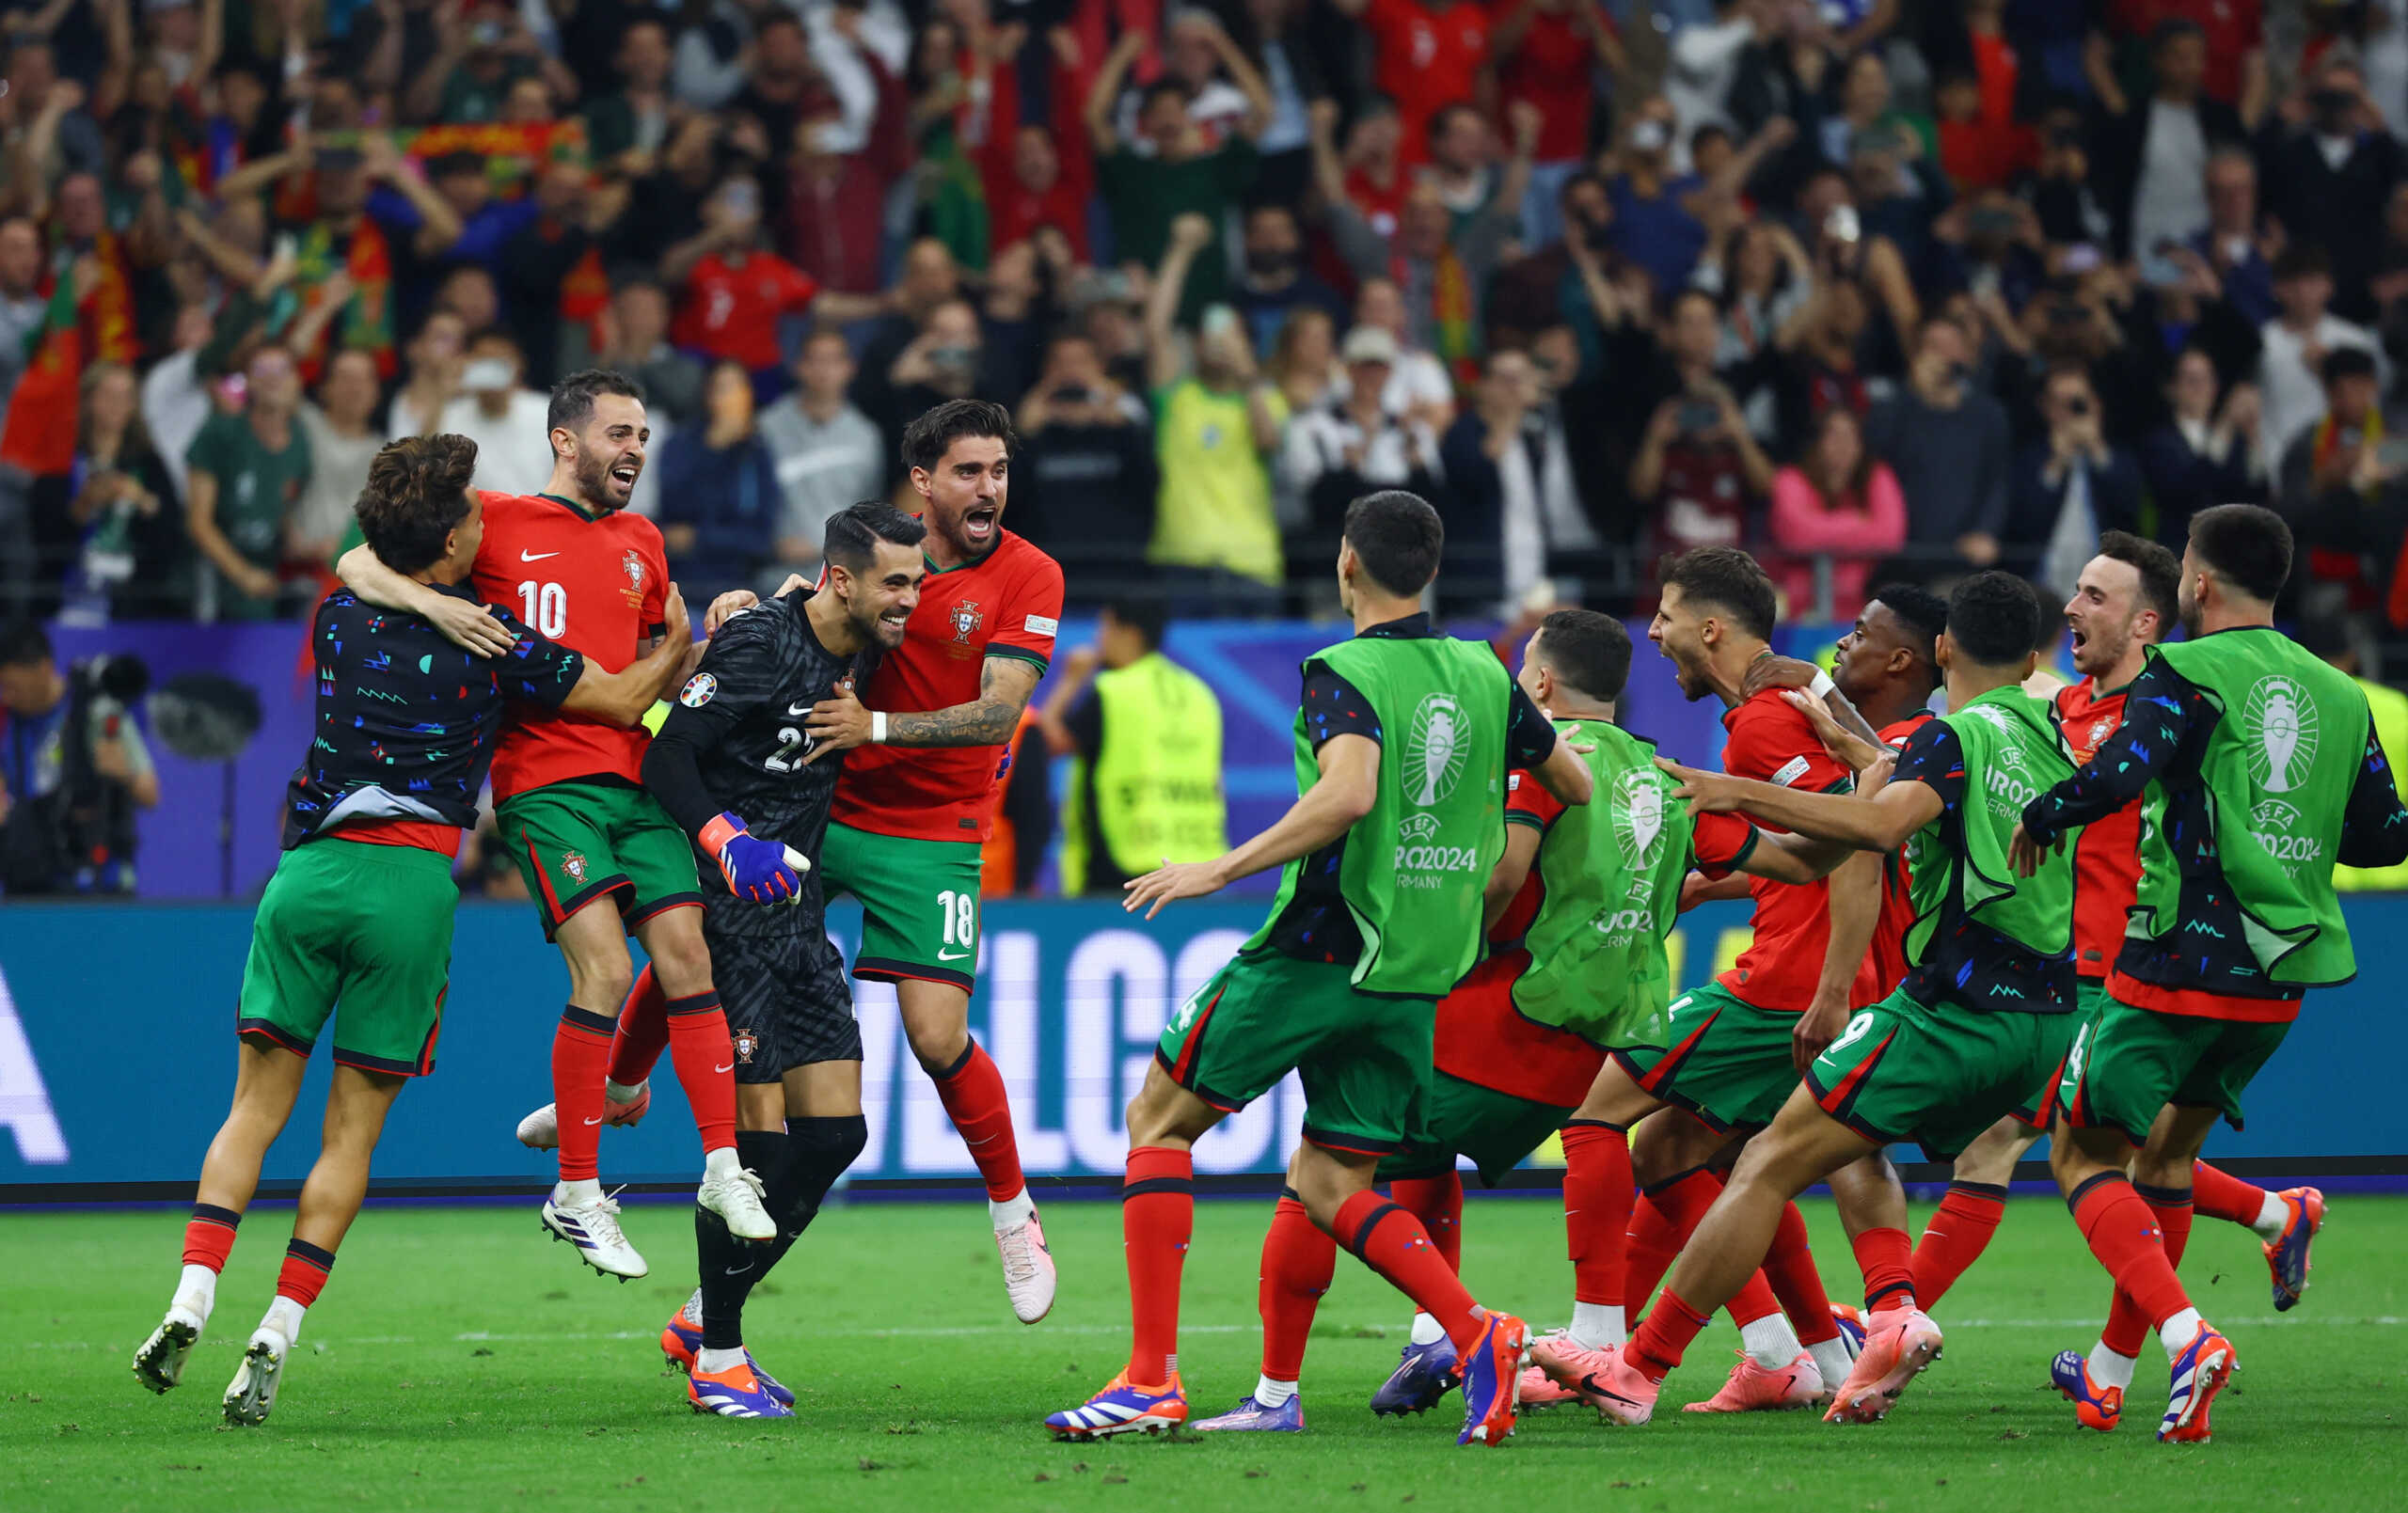 Πορτογαλία – Σλοβενία 3-0 πέναλτι (0-0 παράταση): Στα προημιτελικά οι Ίβηρες με ήρωα τον Ντιόγκο Κόστα που απέκρουσε τρία πέναλτι